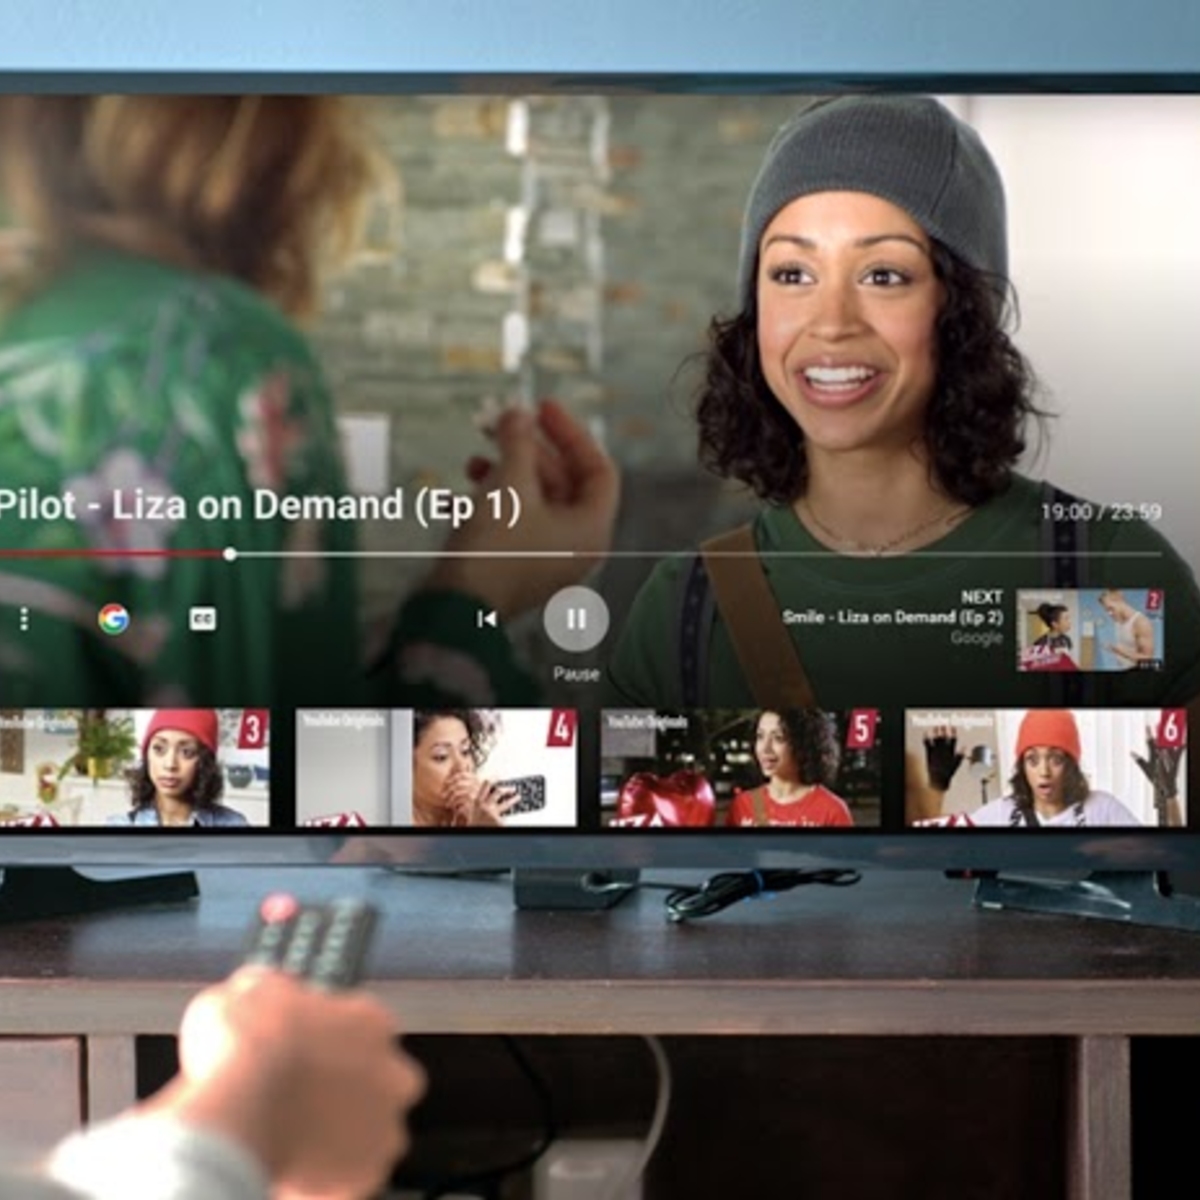 Avec YouTube Select, Google veut séduire les annonceurs du monde de la télévision